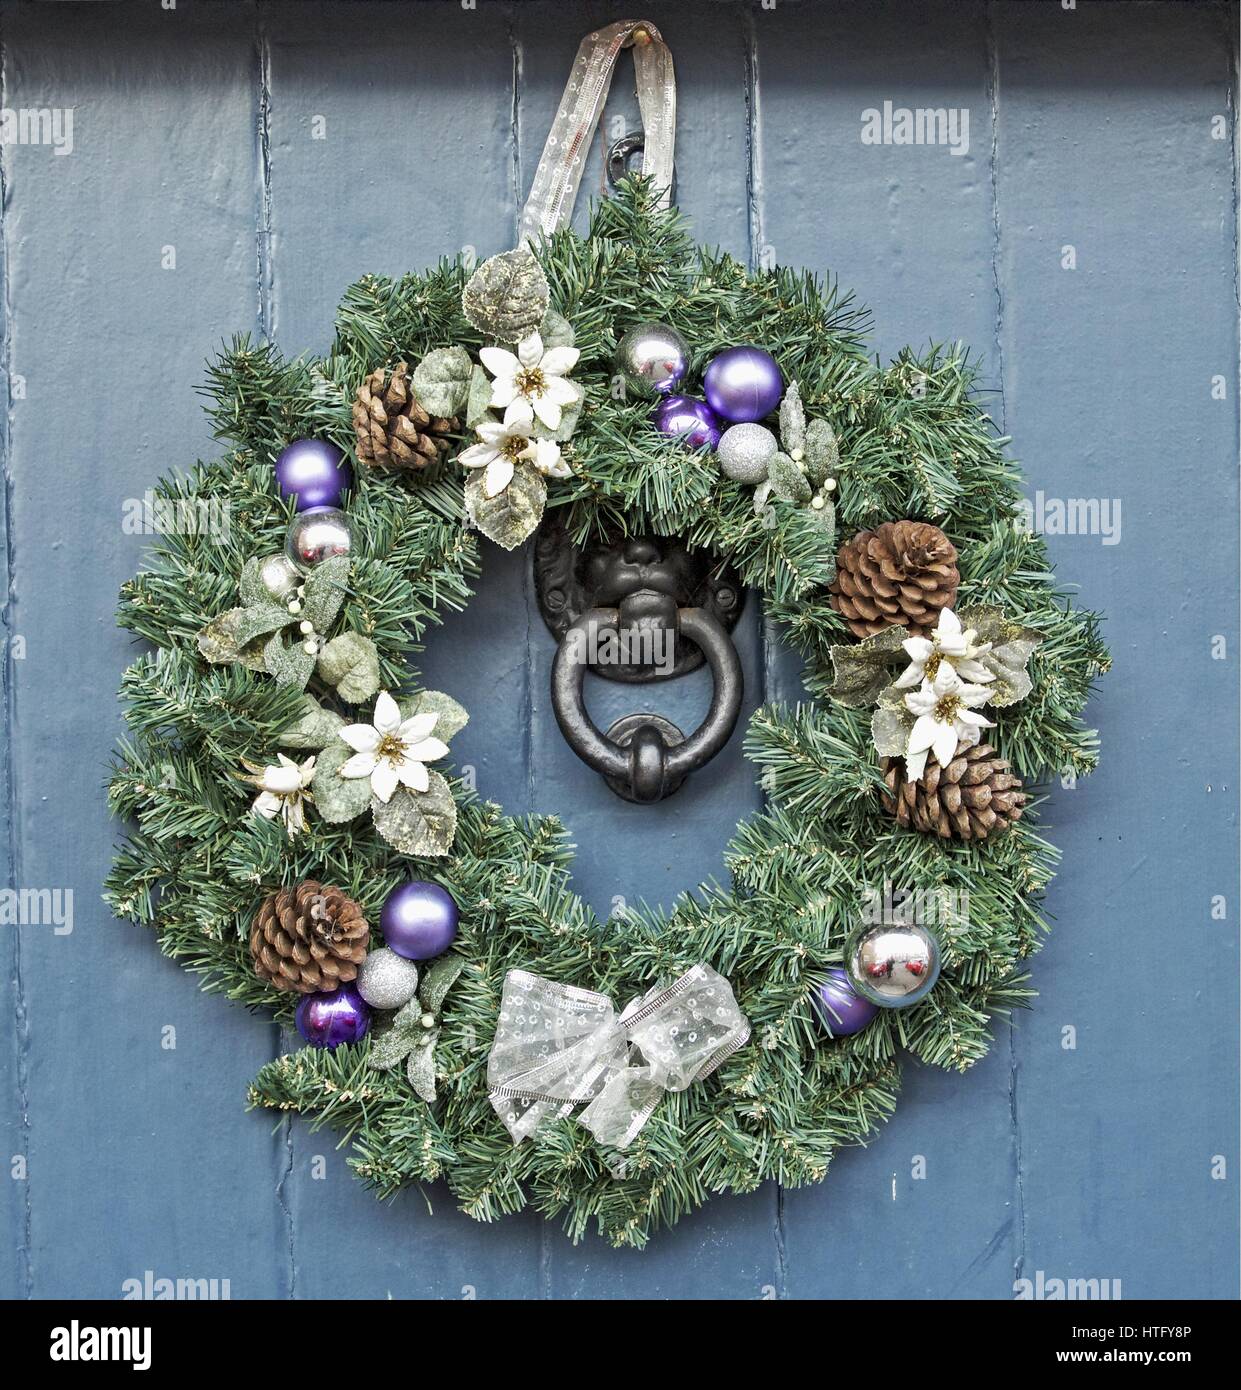 Christmas door wreaths Stock Photo